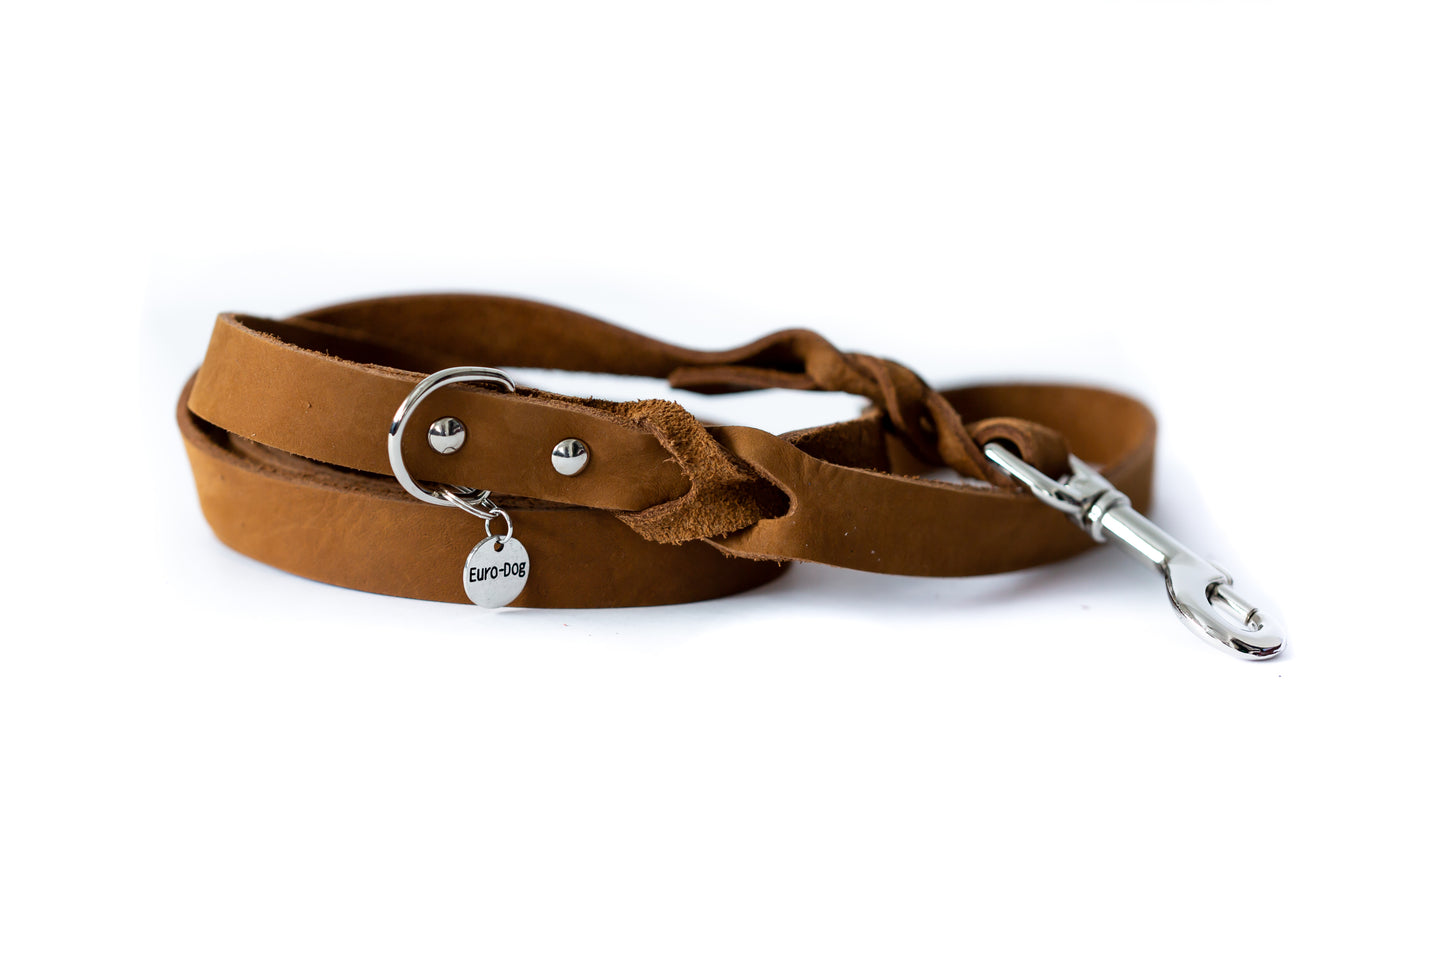 Leather Braided Dog Leash